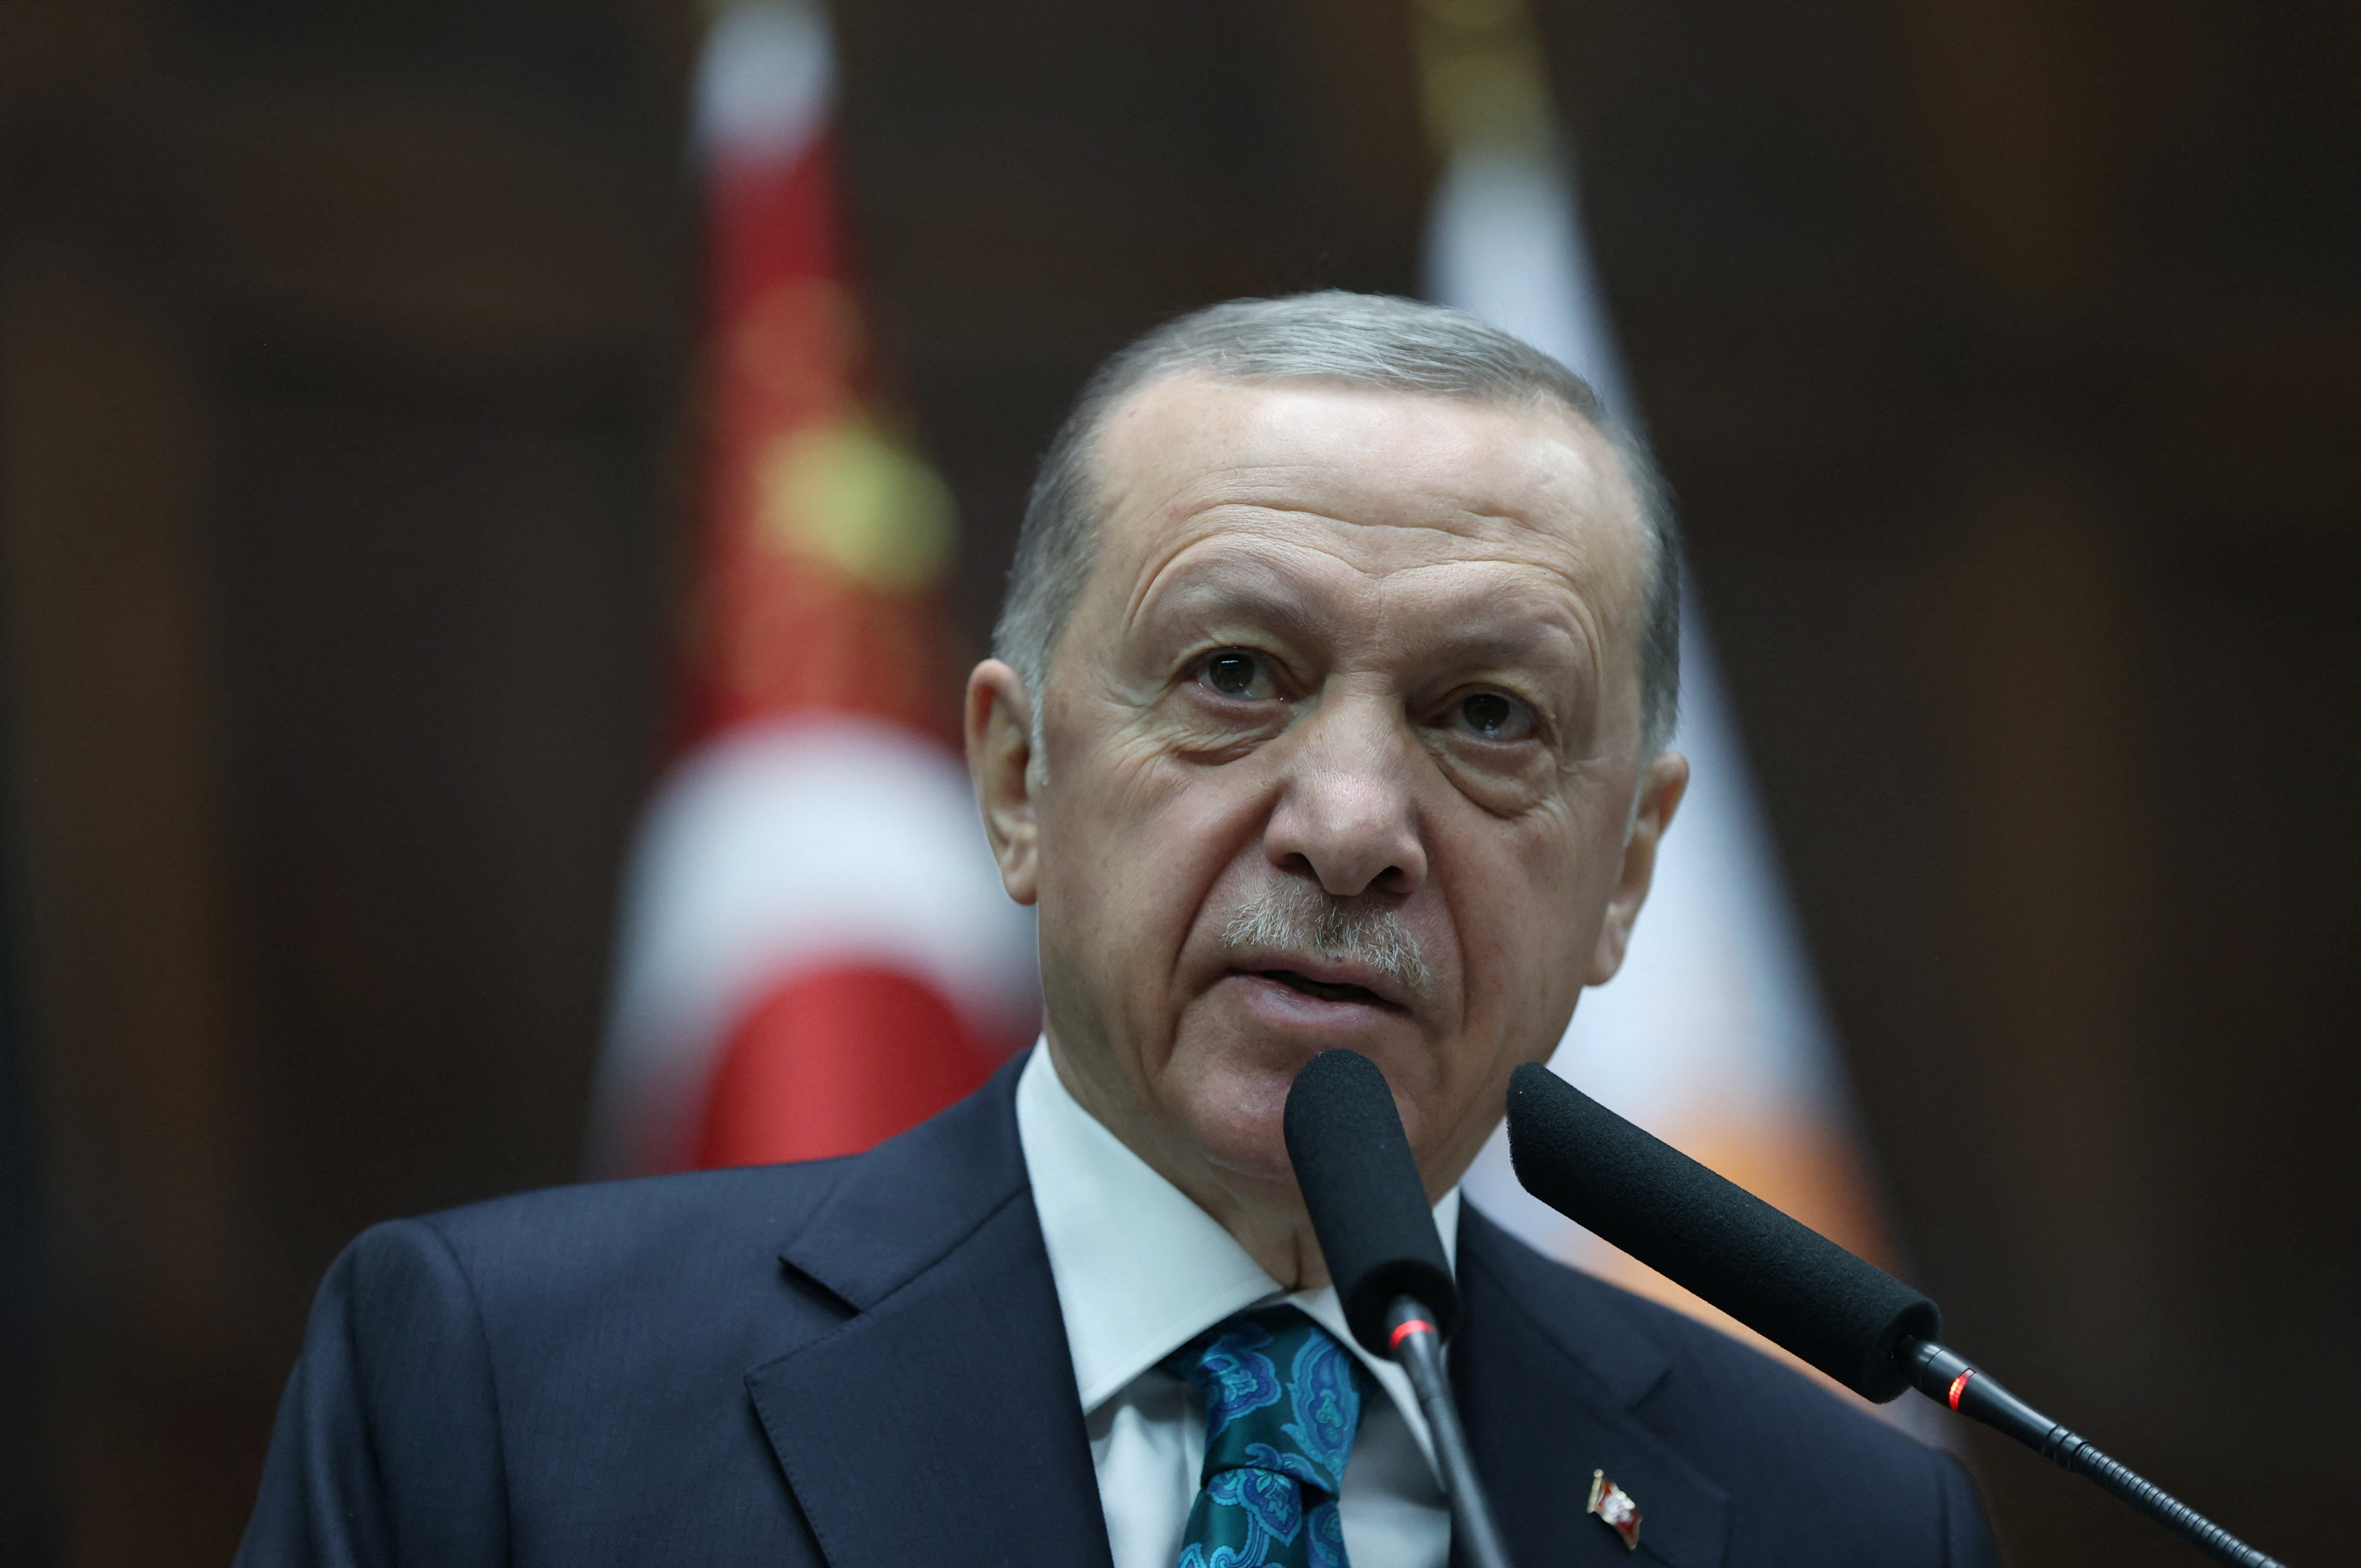 La Junta Electoral de Turquía respaldó a Erdogan en su candidatura a la presidencia y rechazó el recurso de la oposición